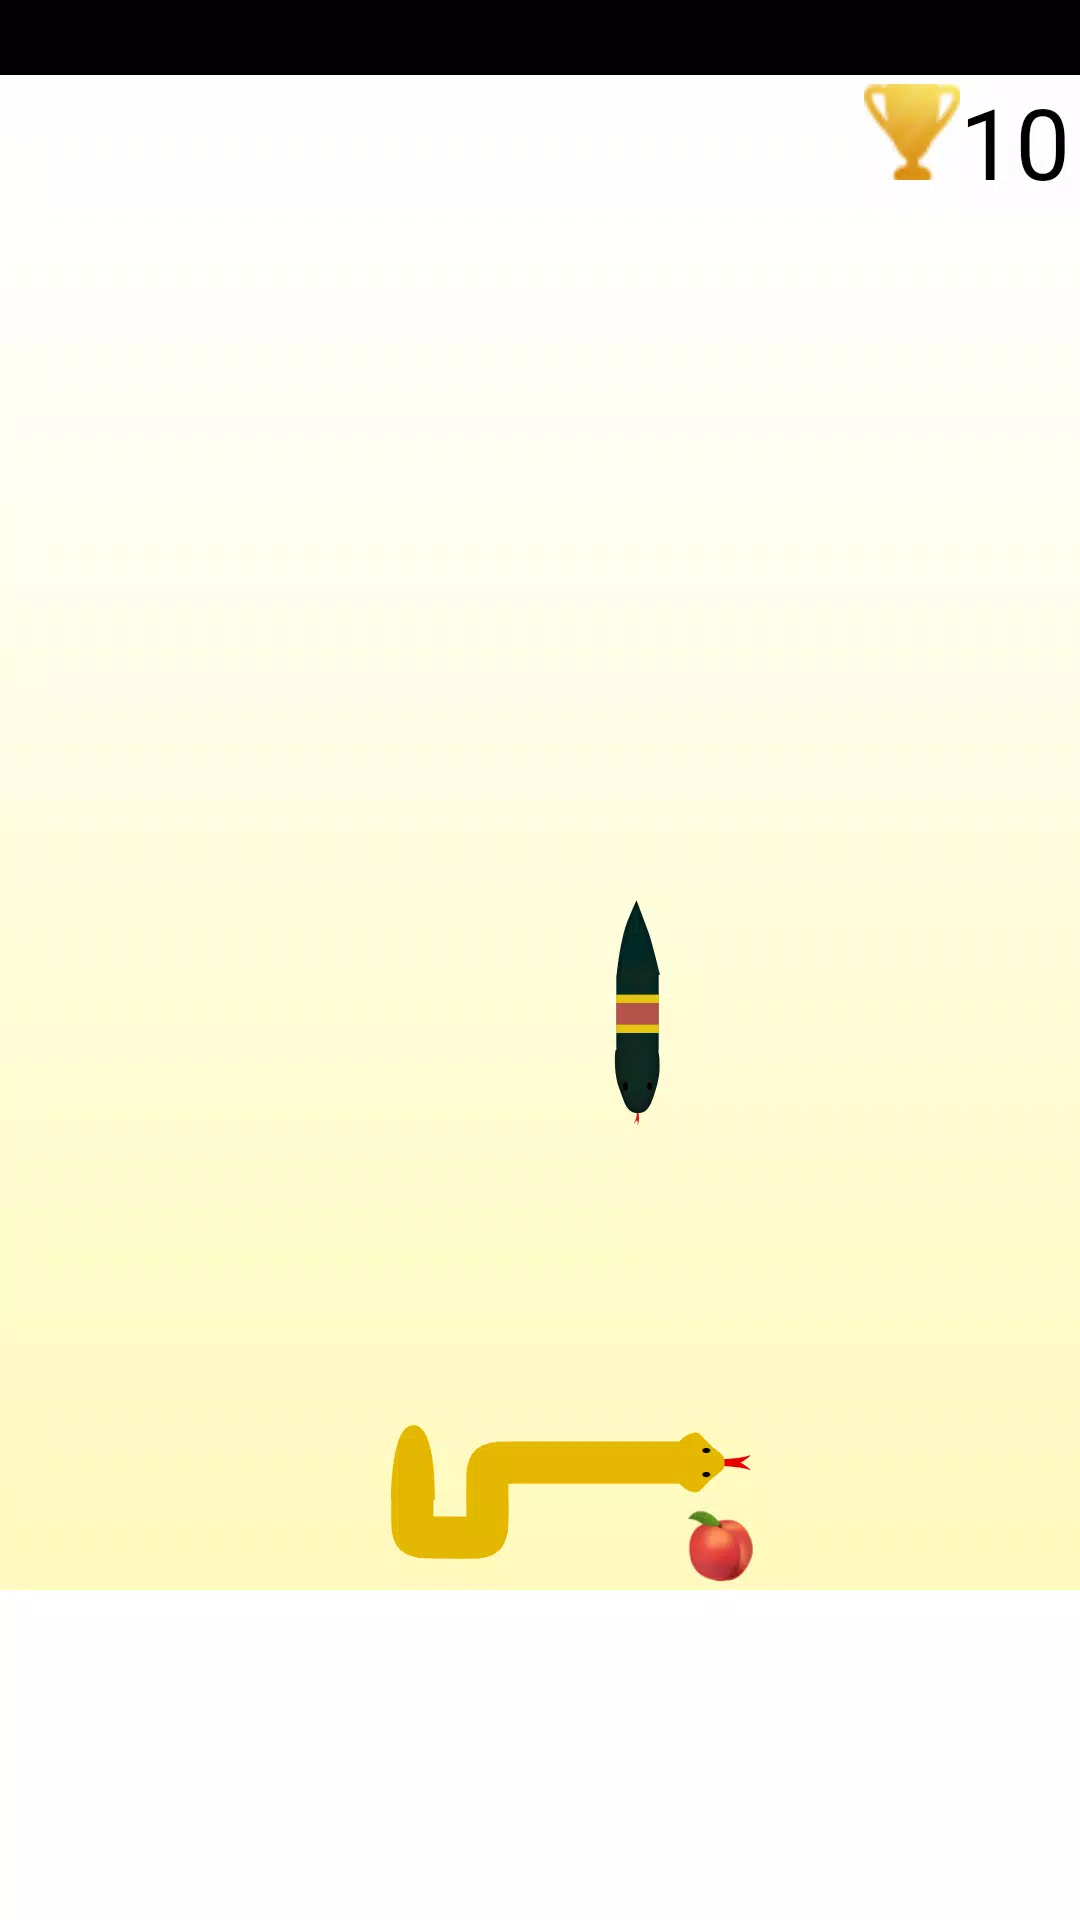 Download do APK de cobra coma o jogo de frutas para Android